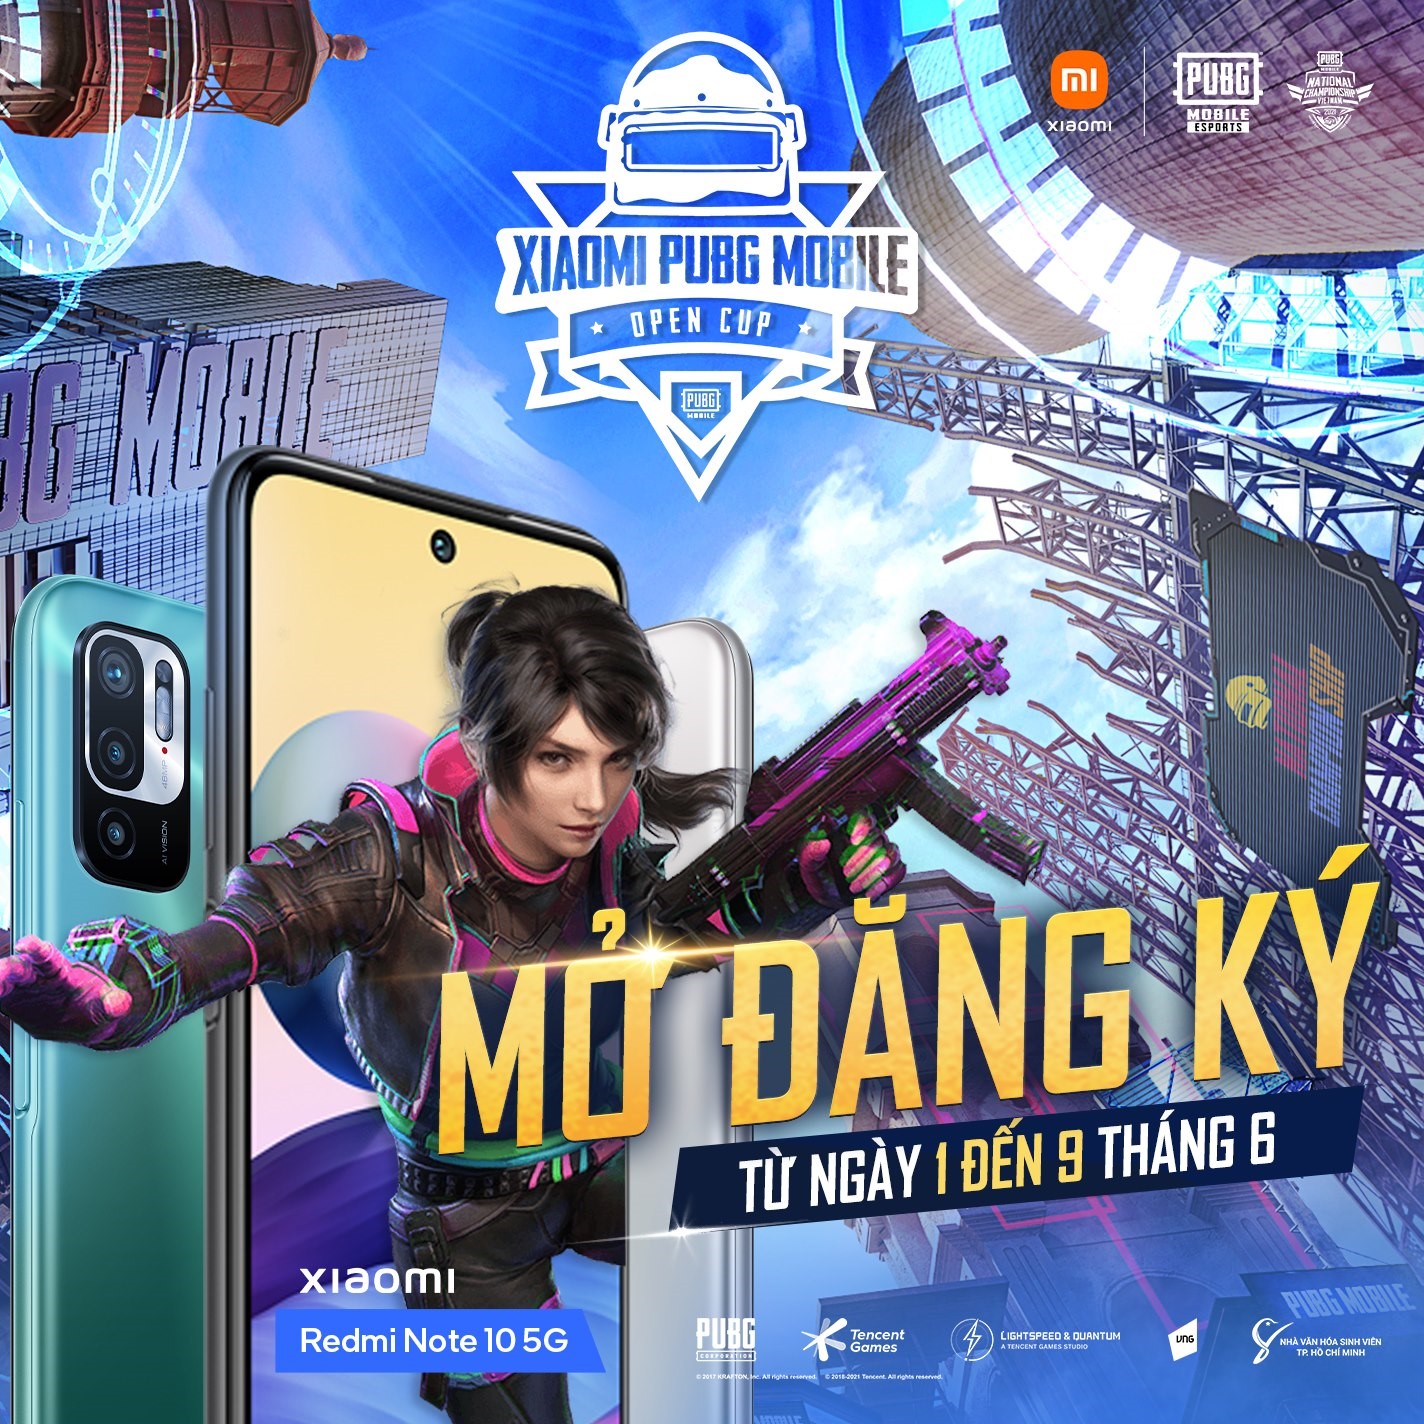 PUBG Mobile "bung" loạt giải đấu, mang đến cơ hội tranh tài cho bo thủ trên toàn quốc